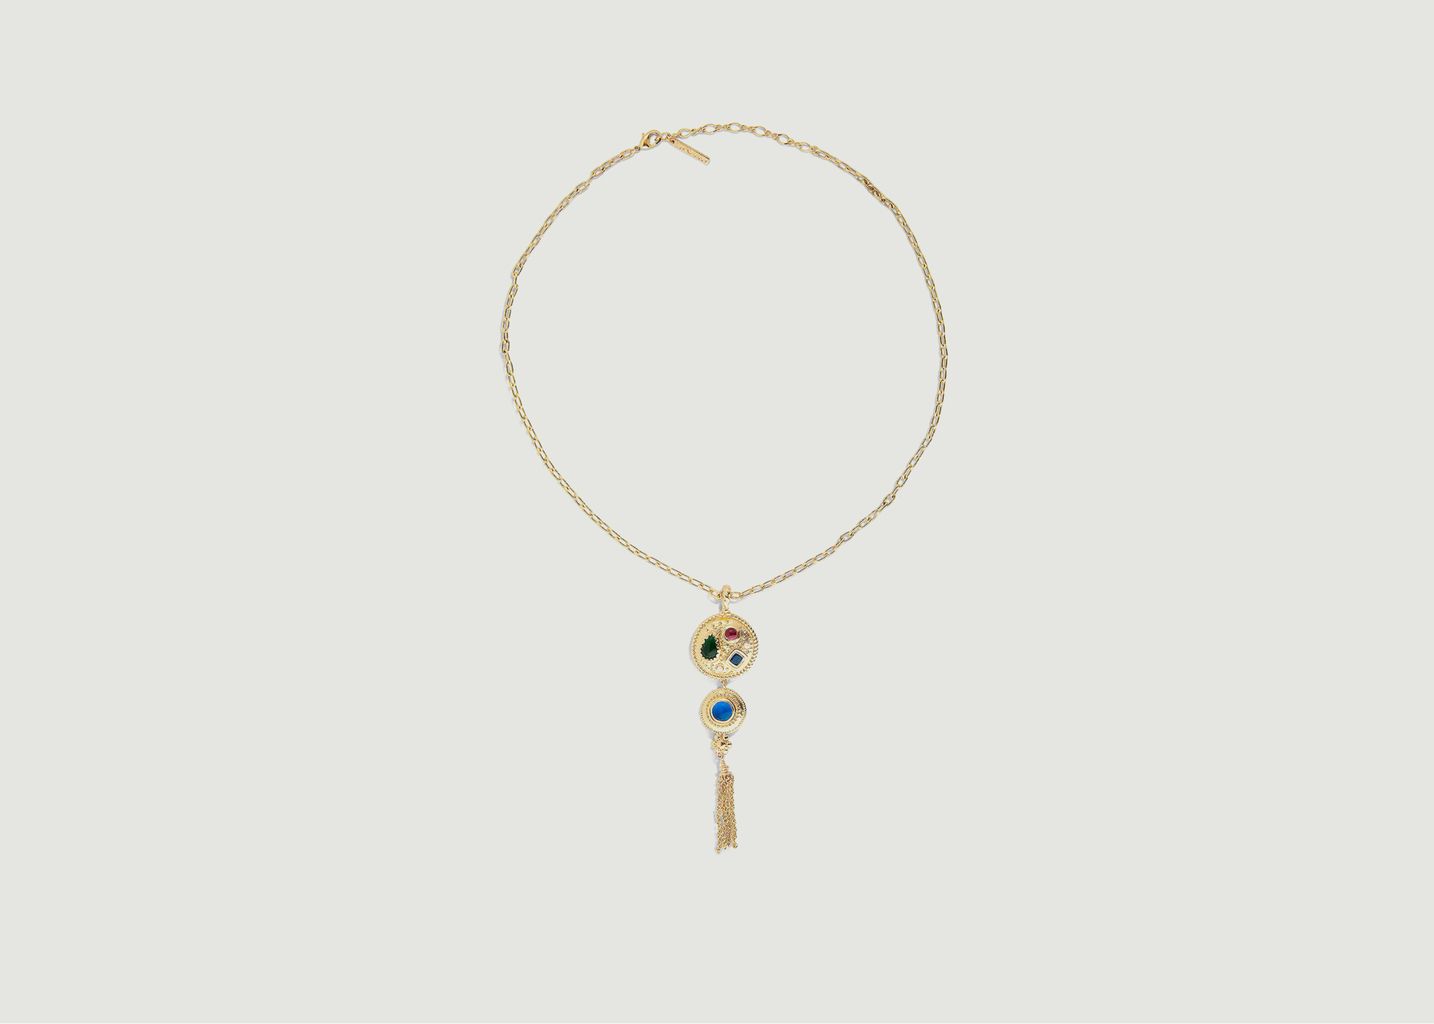 Necklace with medallion colored stones - Les Néréides